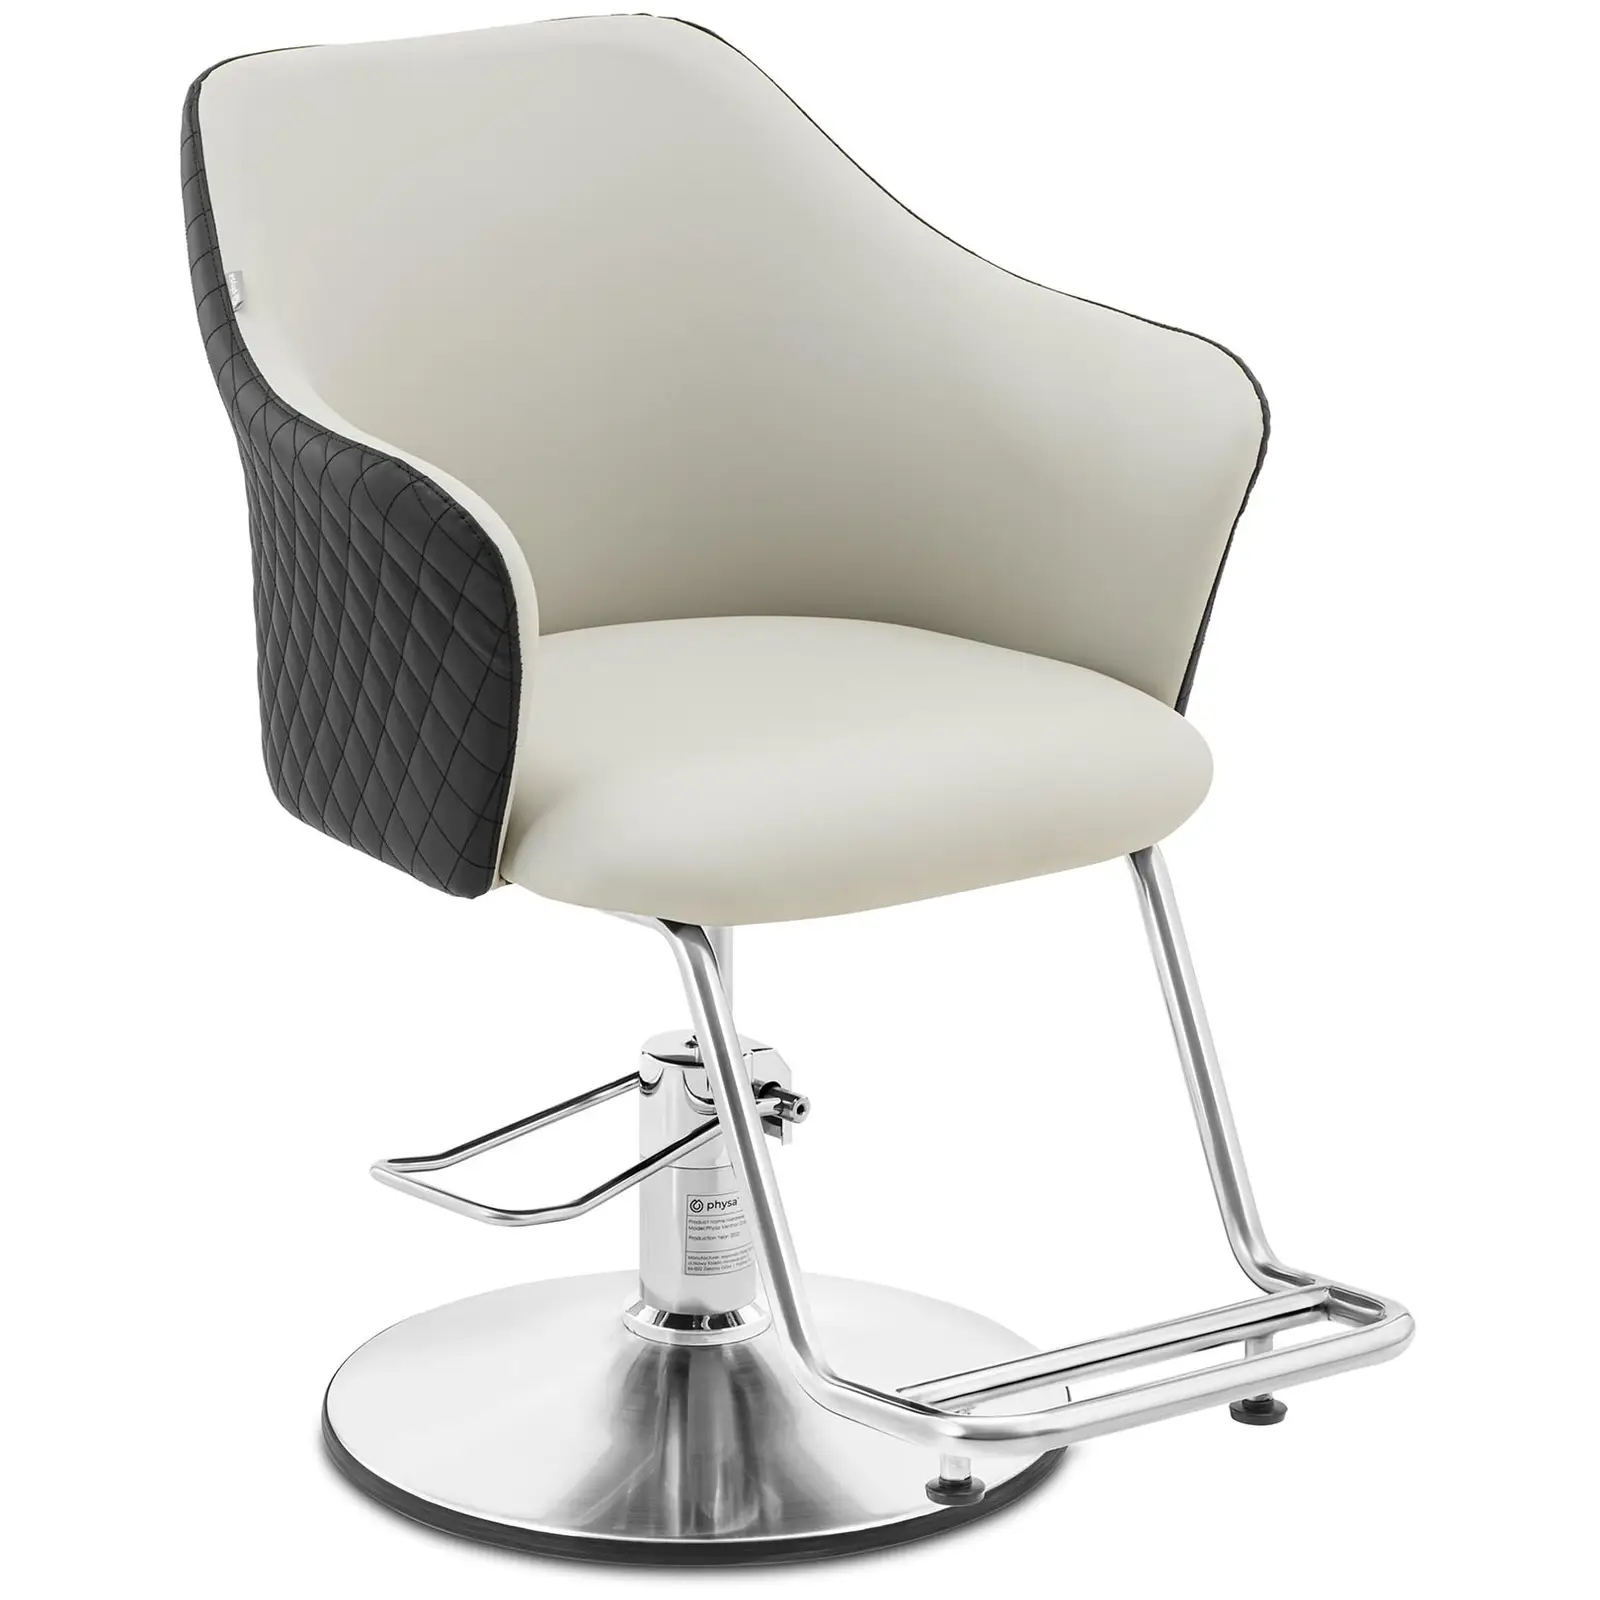 Cadeira de cabeleireiro com apoio para os pés - 890-1040 mm - 200 kg - Preto, Cinza claro, Prata